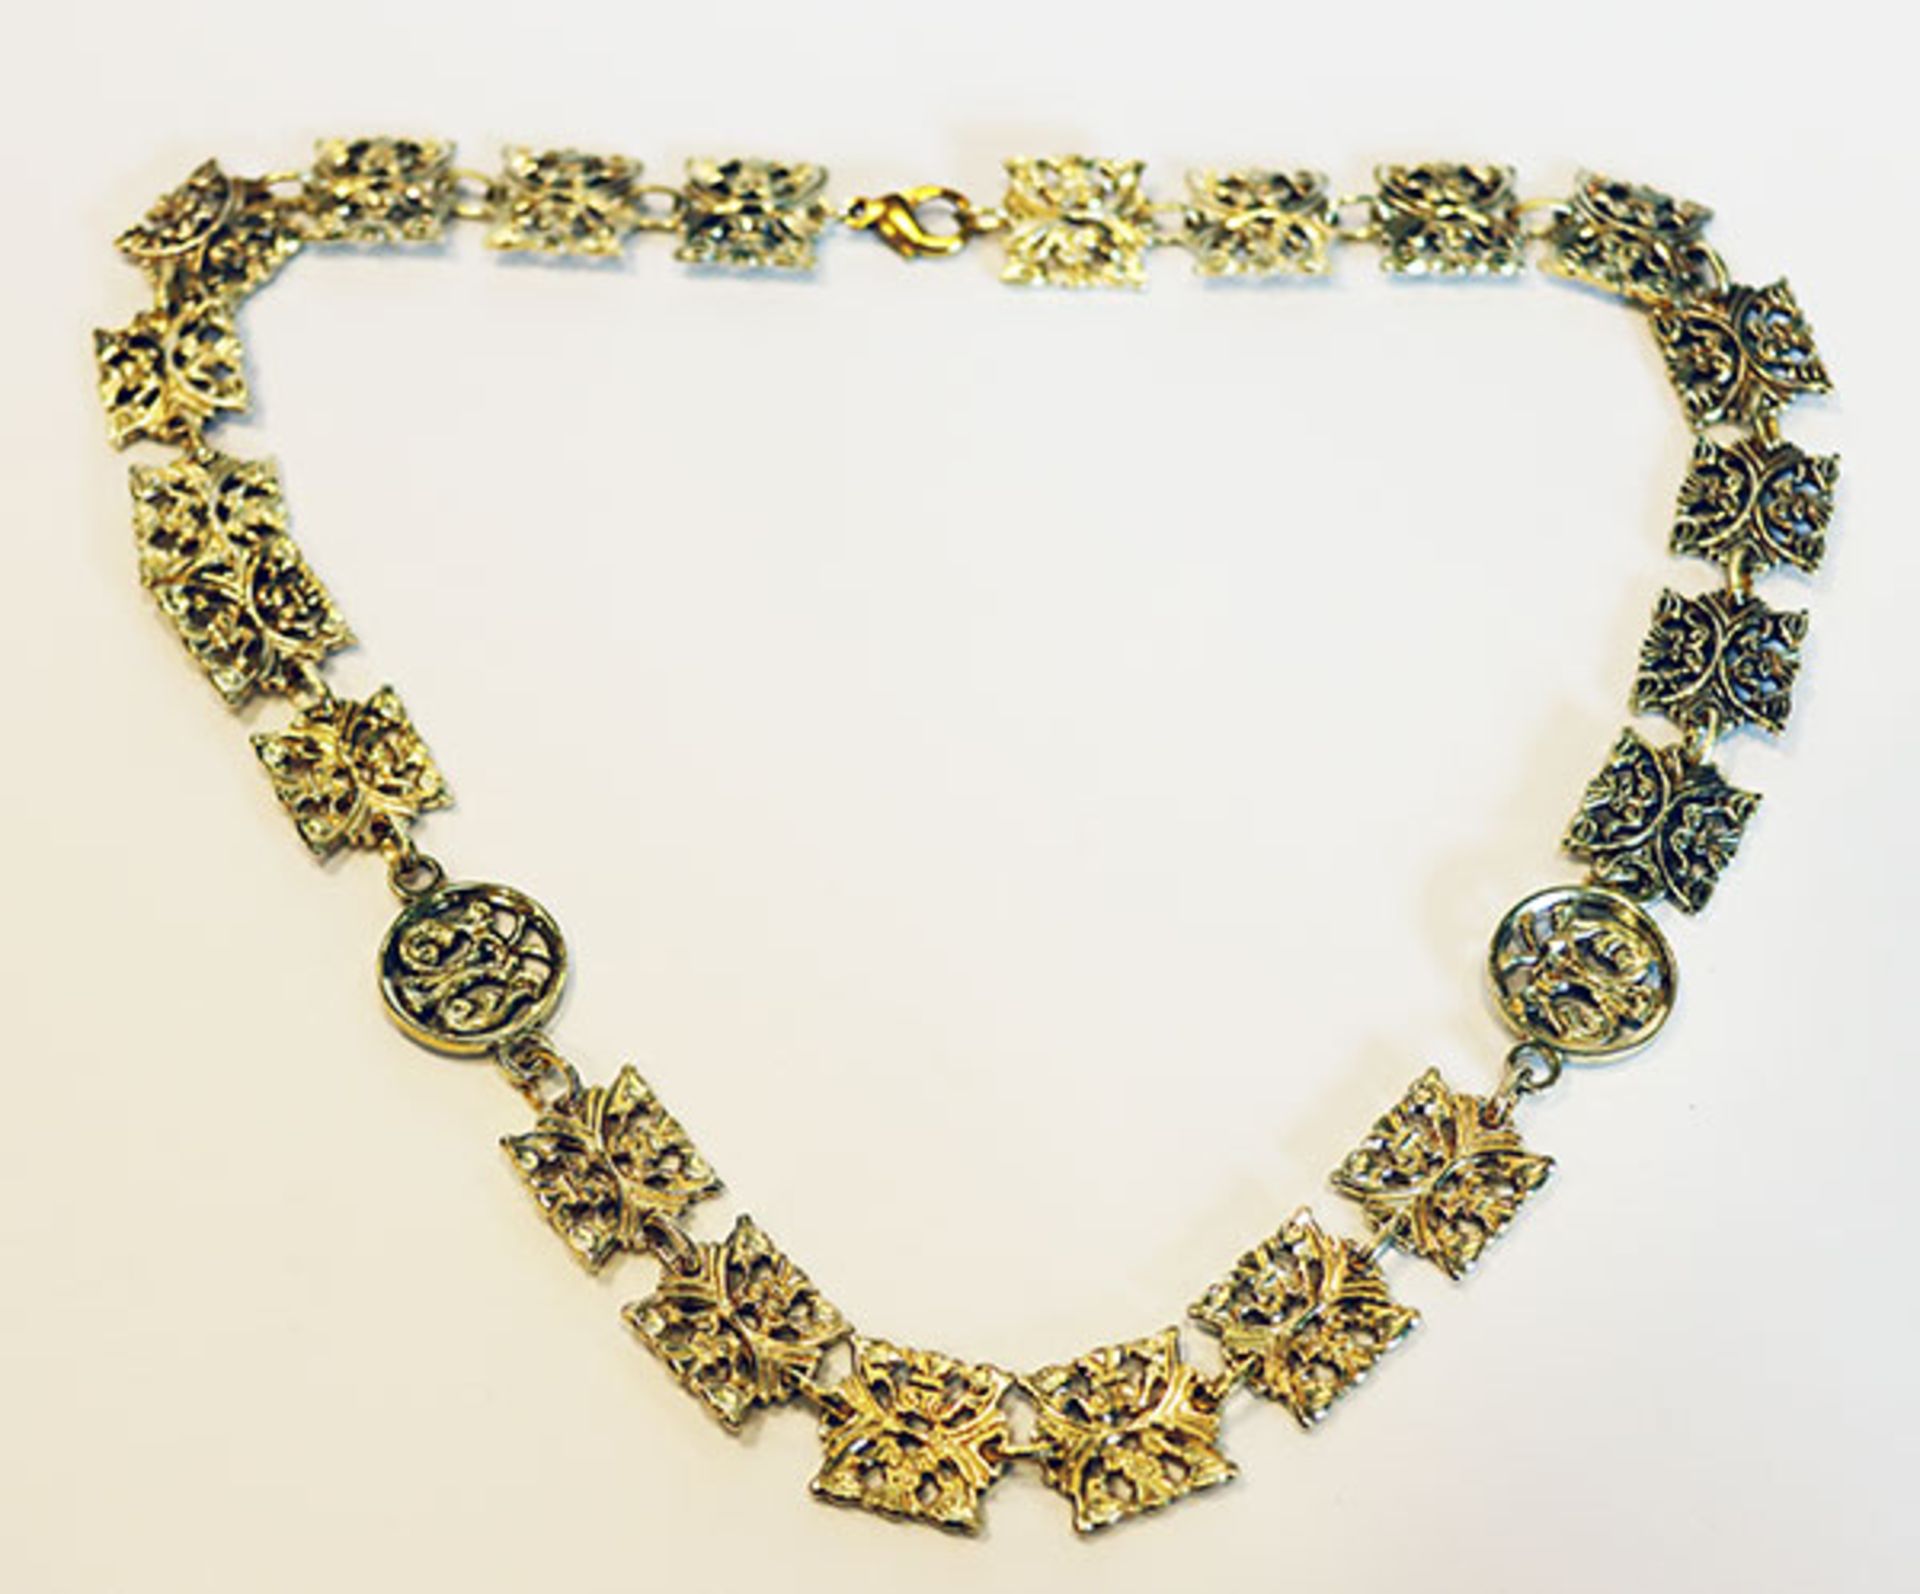 Collierkette, 835 Silber/vergoldet, 66 gr., L 50 cm